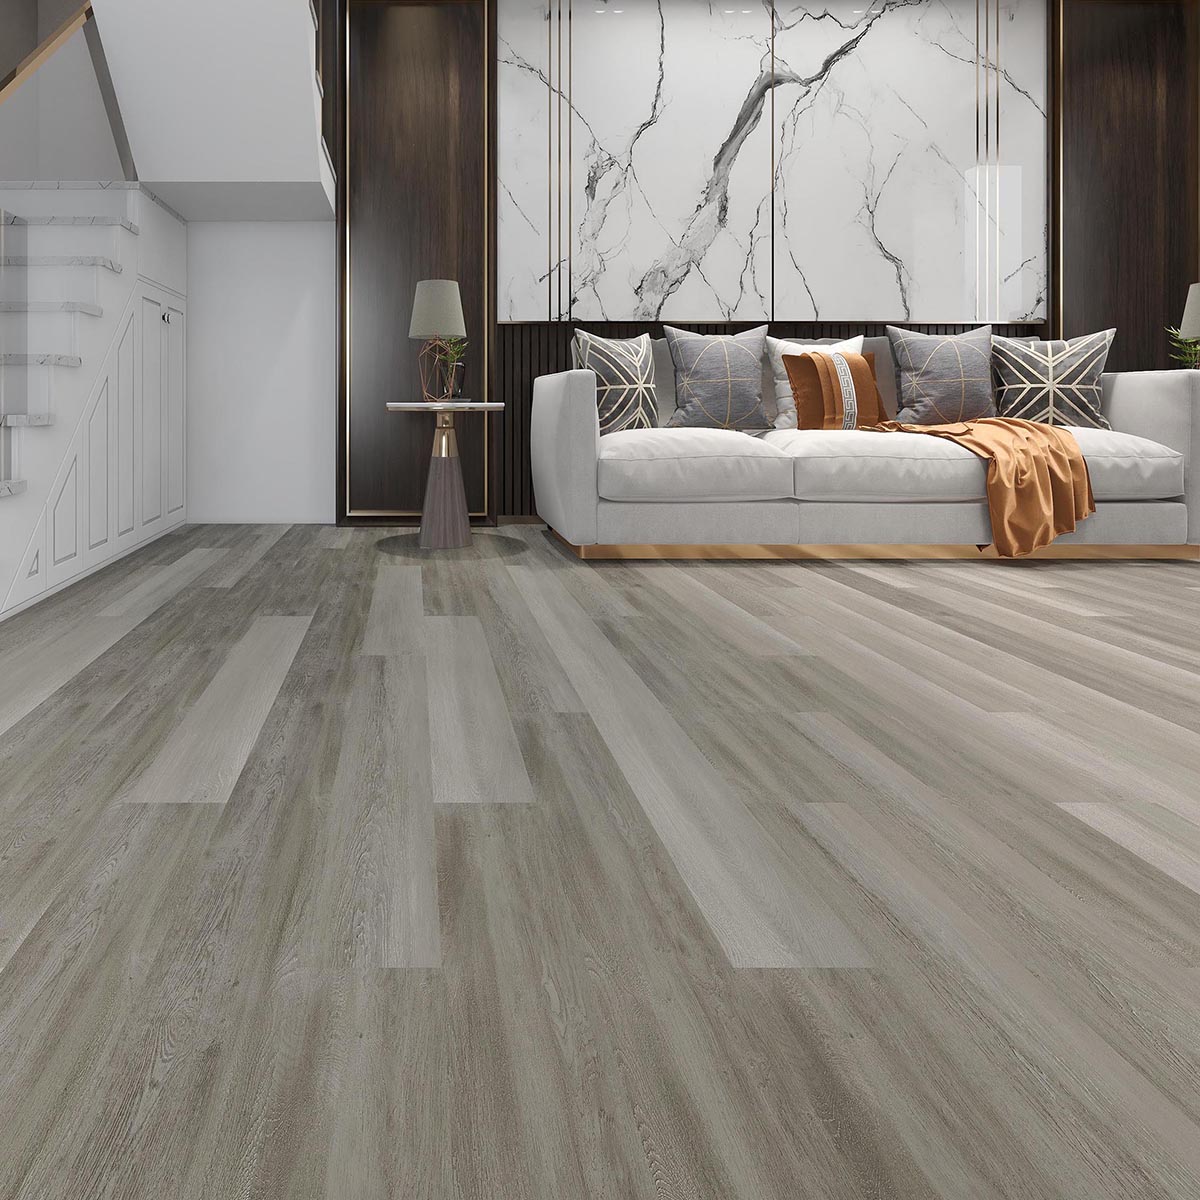 New Arrival China Spc Floor Tiles -
 Light Grey Wood Grain Rigidcore Click Flooring – TopJoy